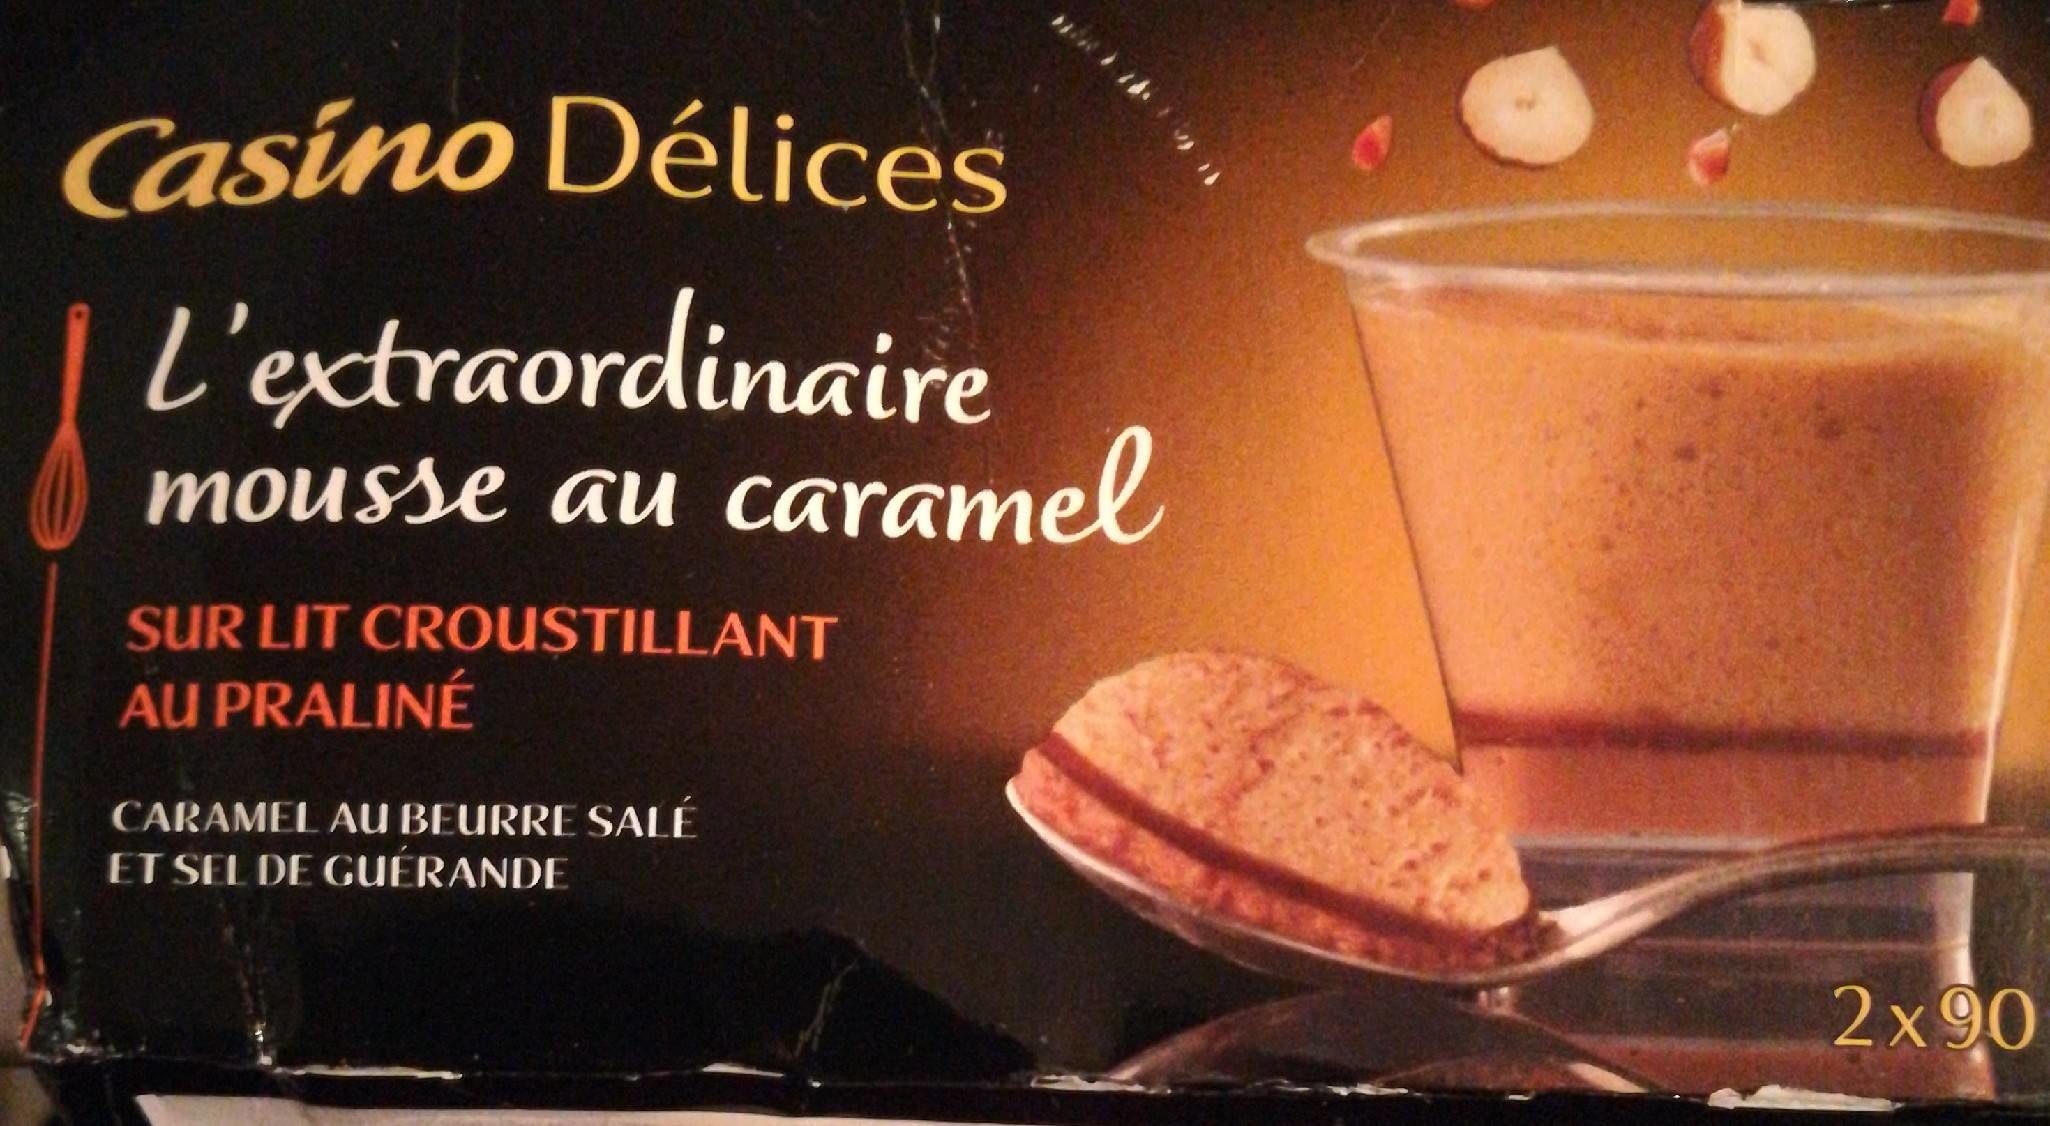 L'extraordinaire mousse au caramel sur lit croustillant au praliné - Product - fr